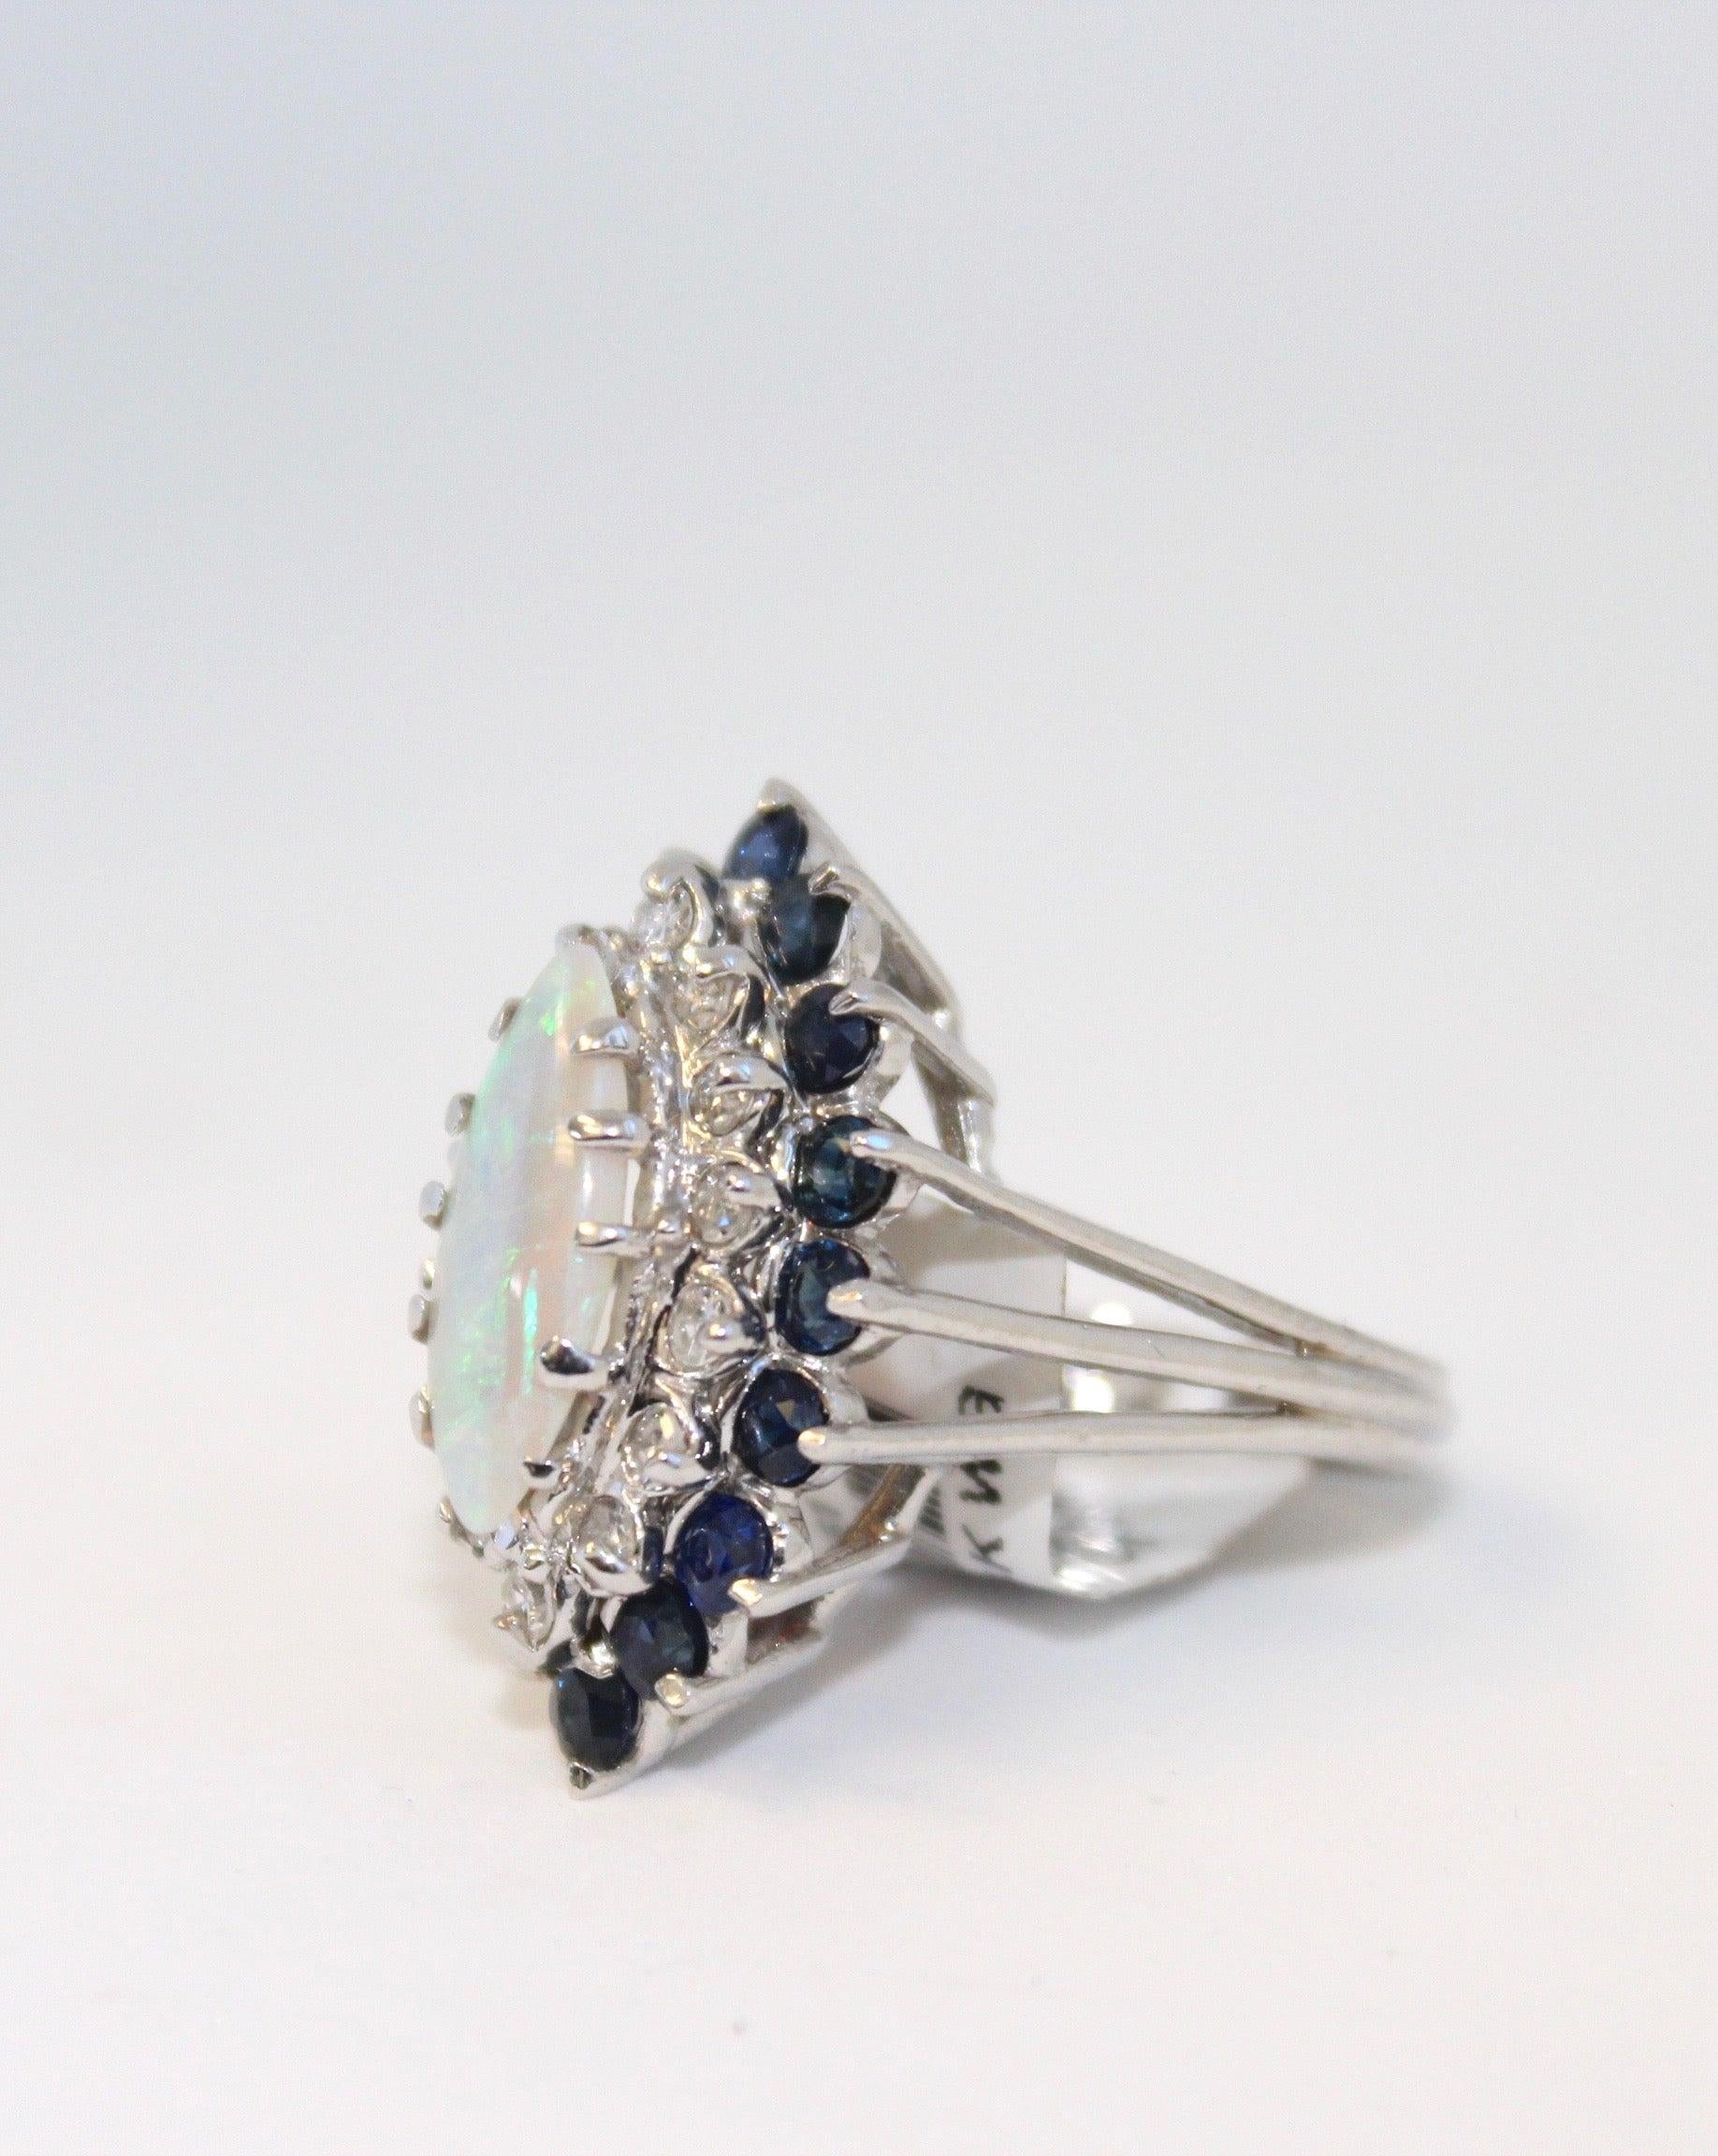 Mit vierzehn leuchtenden Diamanten, sechzehn dunkelblauen Saphiren und einem wunderschönen ovalen Mittelstück sollten Sie sich die Chance nicht entgehen lassen, diesen unglaublichen Ring zu besitzen. 